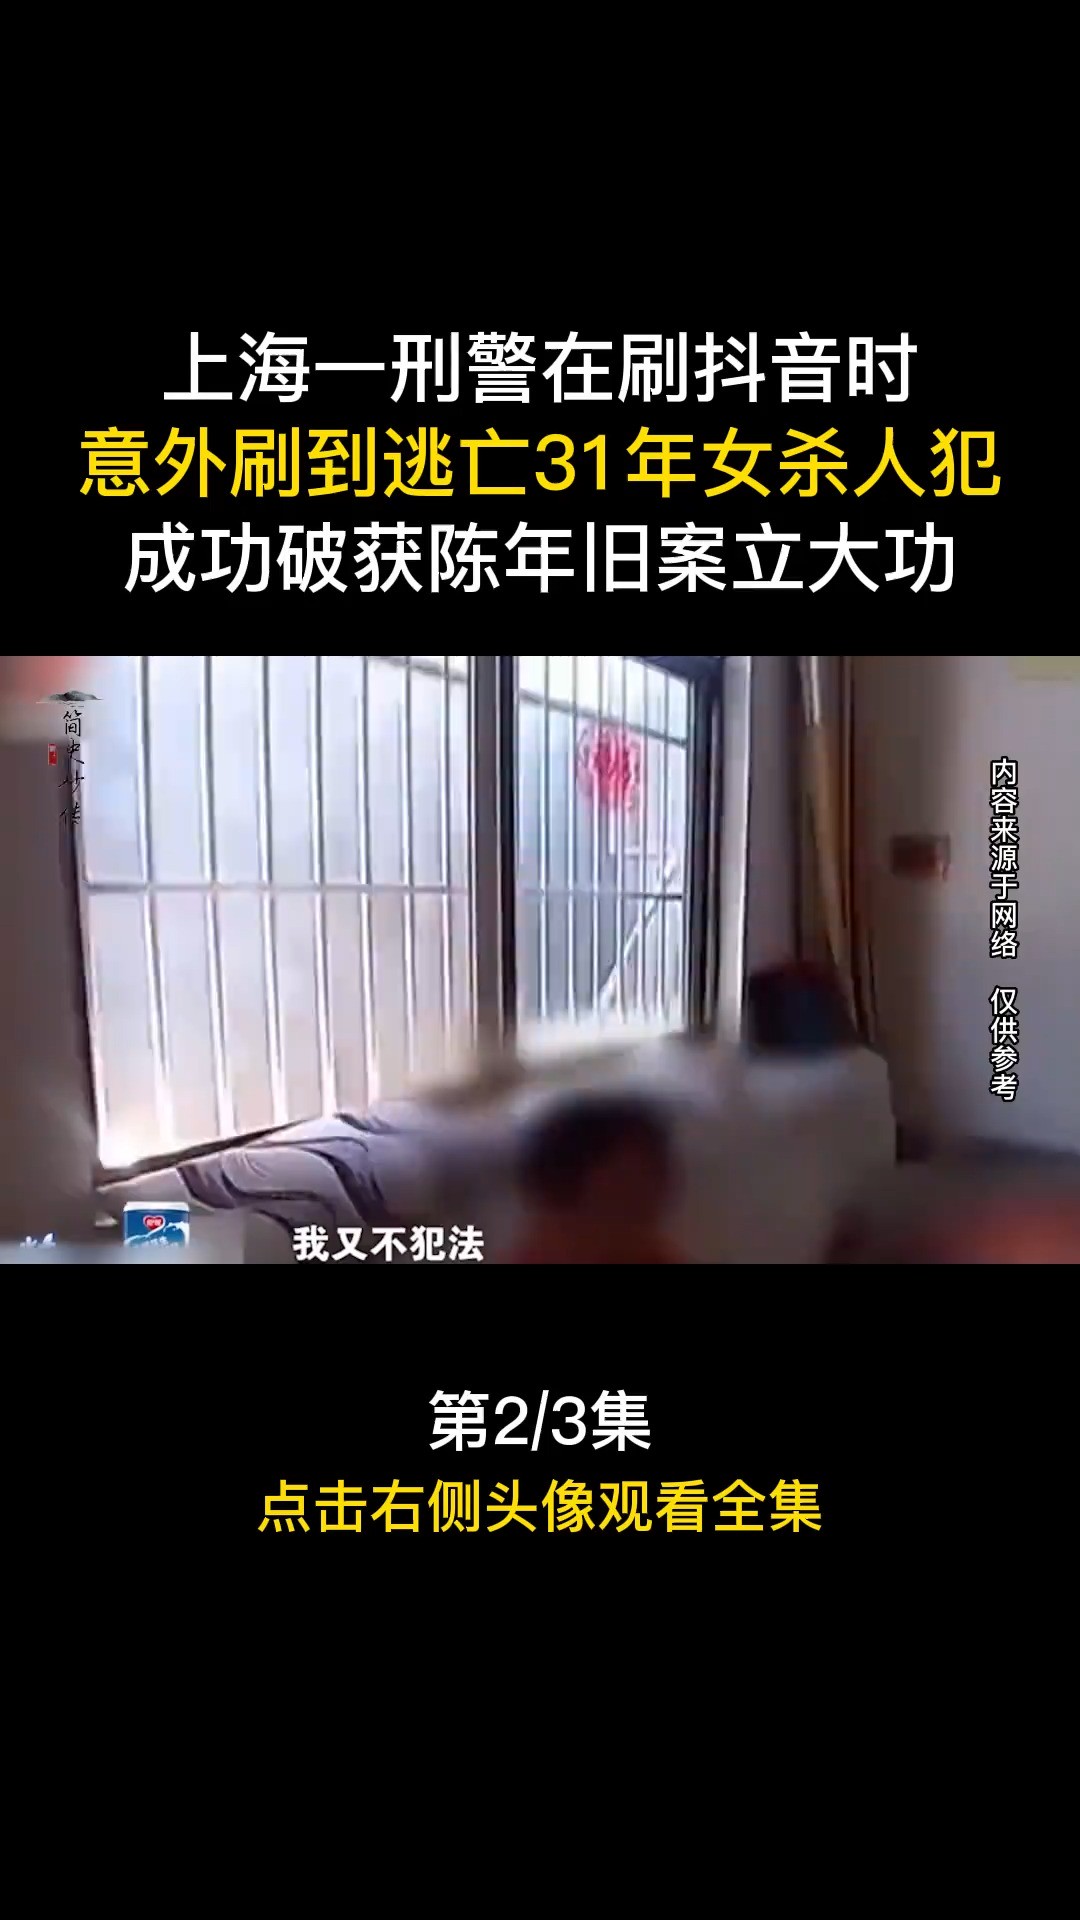 上海一刑警在刷时，意外刷到逃亡31年女杀人犯，成功破获陈年旧案立大功#社会百态#案件#真实事件 (2)


